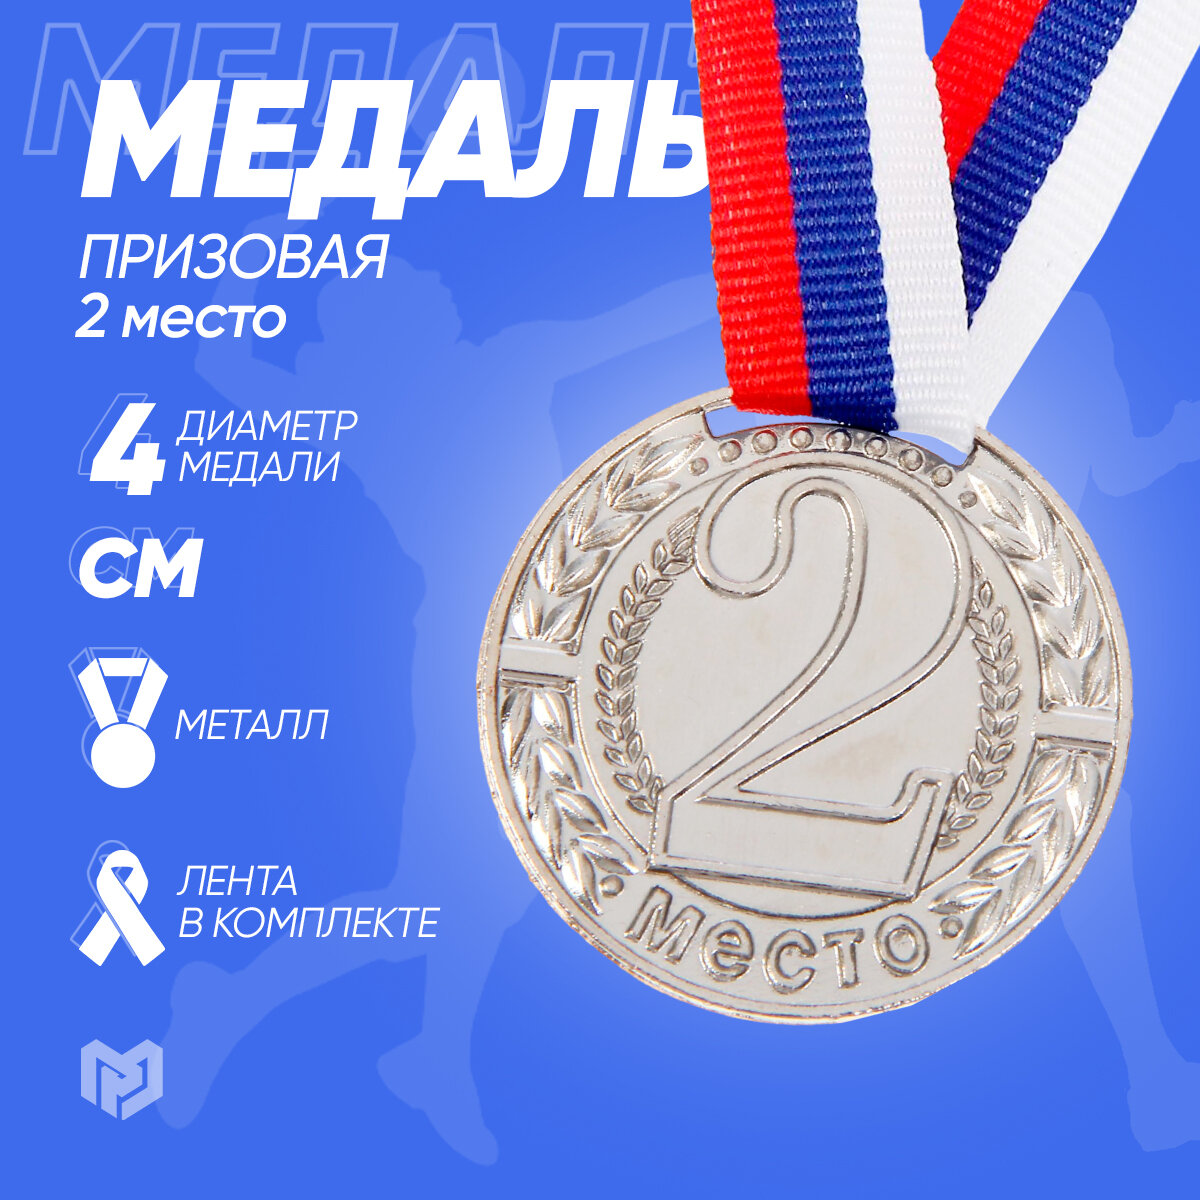 Медаль призовая "2 место", диаметр 40 мм, цвет - серебро